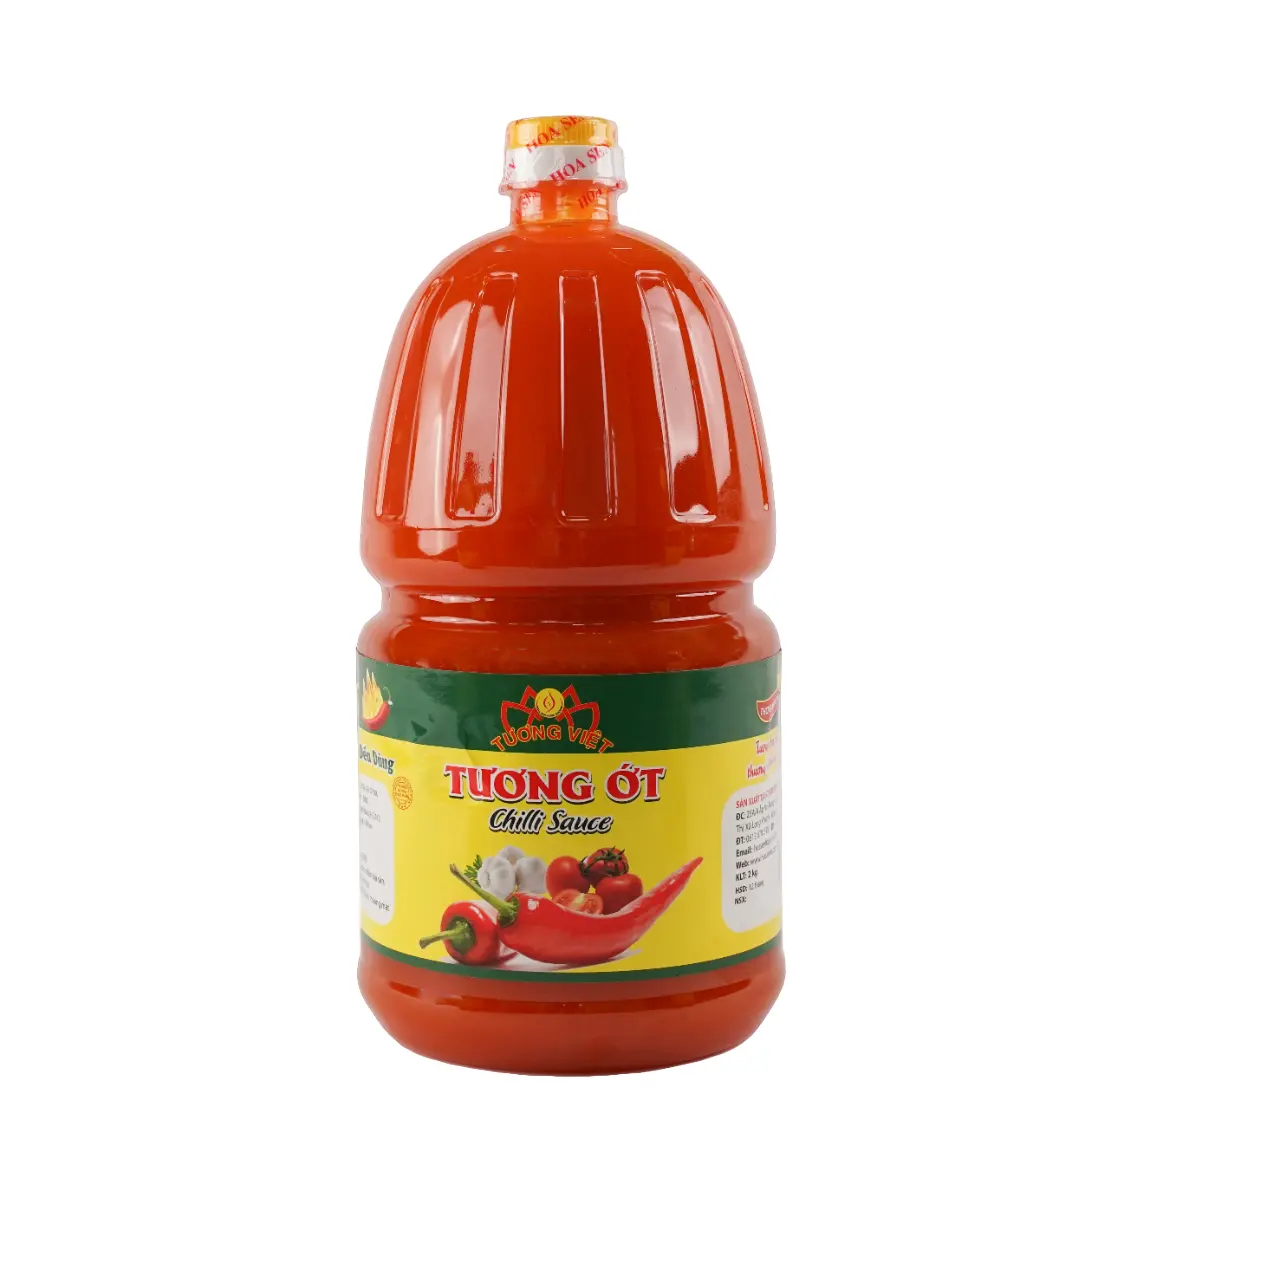 Новый соус Чили, 2 кг, новый Tuong Viet Hoa Sen PET, горячая бутылка для специй, все натуральные ингредиенты, стеклянные бутылки для соуса чили